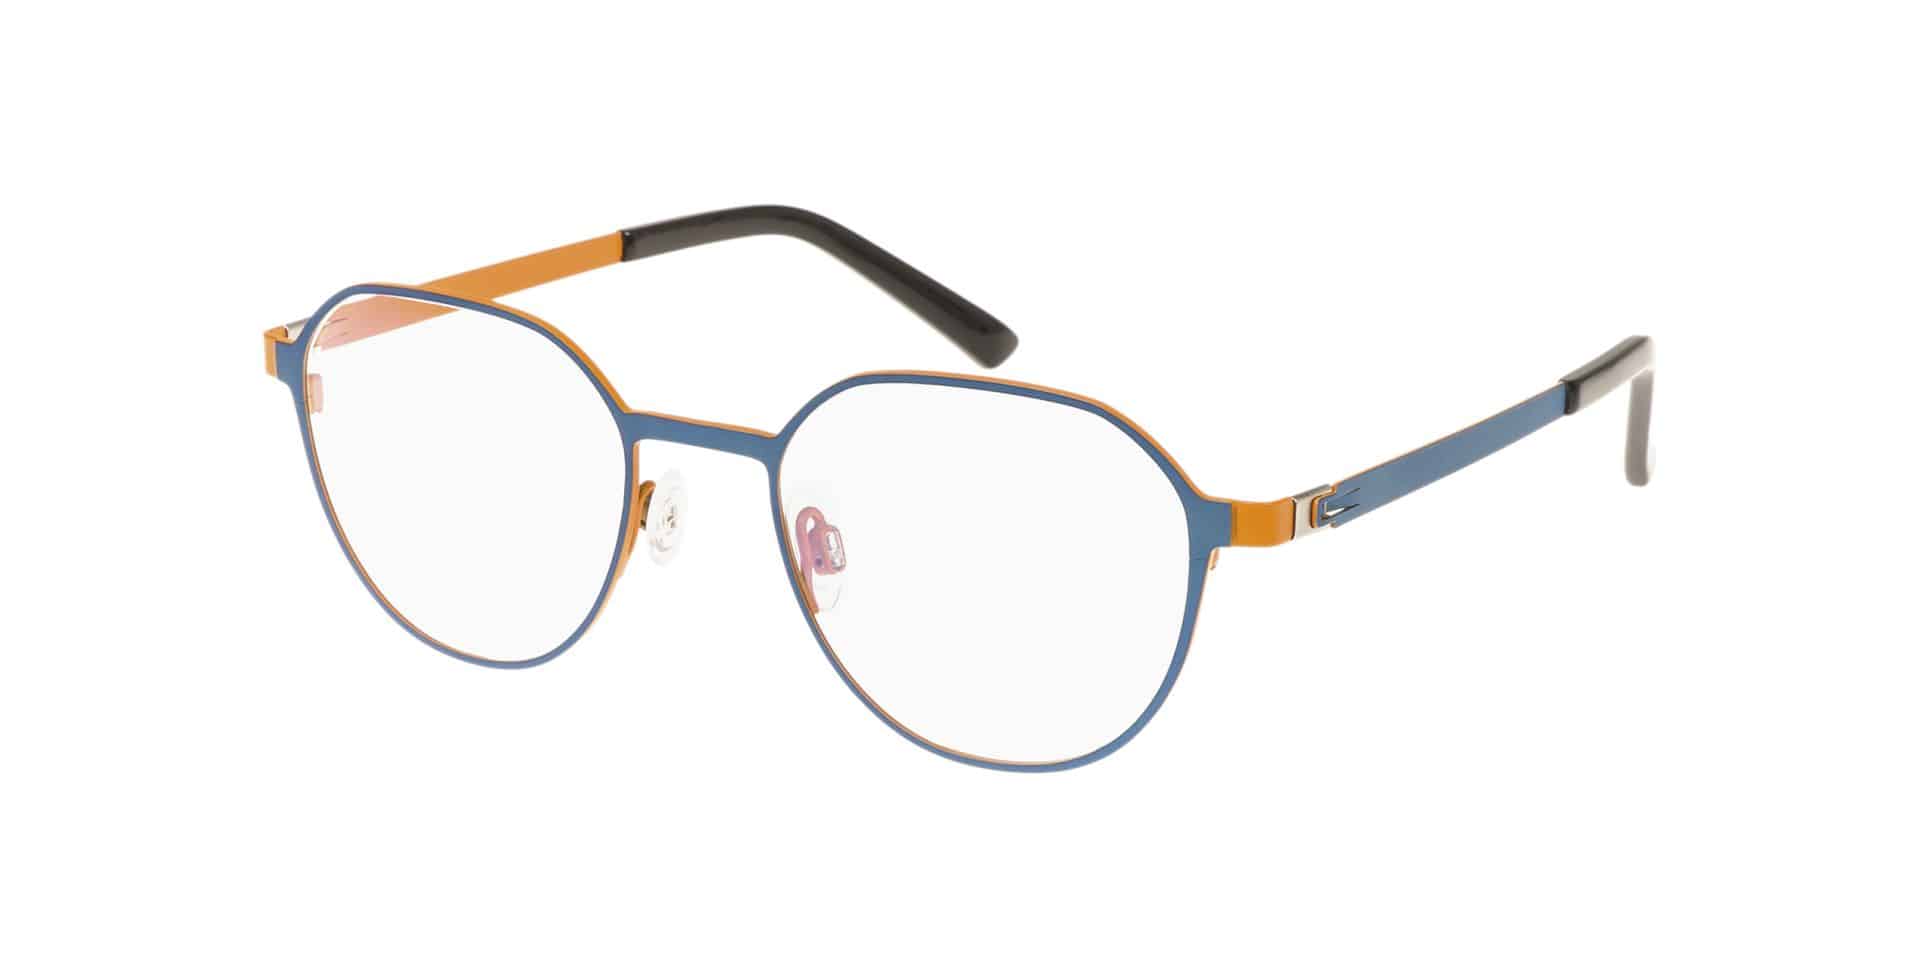 Brillen für kleine Gesichter PARVUM 3311blau orange matt